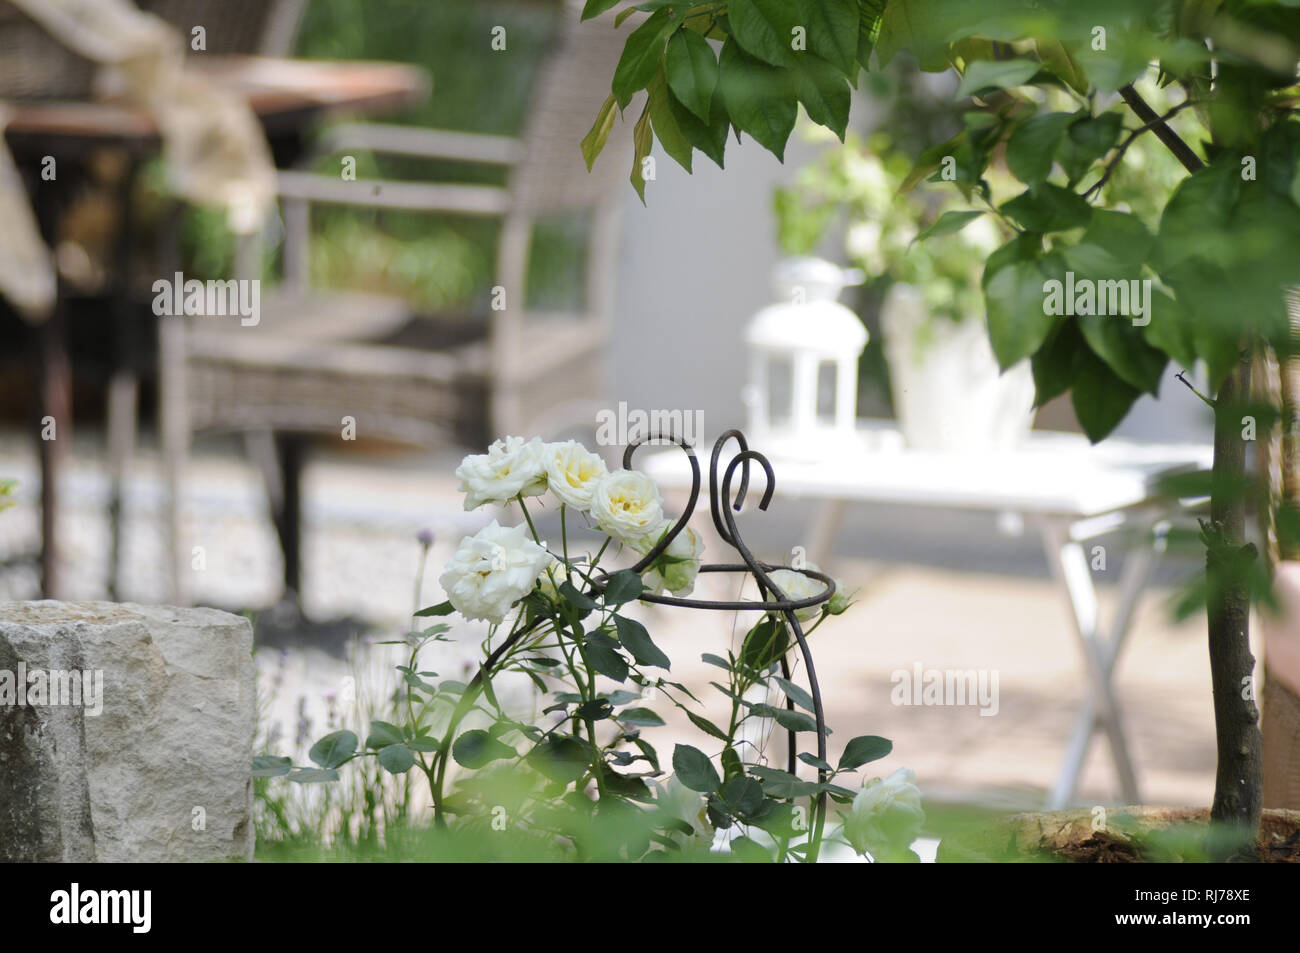 Terrassendeko in Weiß- und Grüntönen, weiße Rosen, Rankgitter, im Vordergrund rechts ein Orangenbäumchen, Navel Foyos Stock Photo